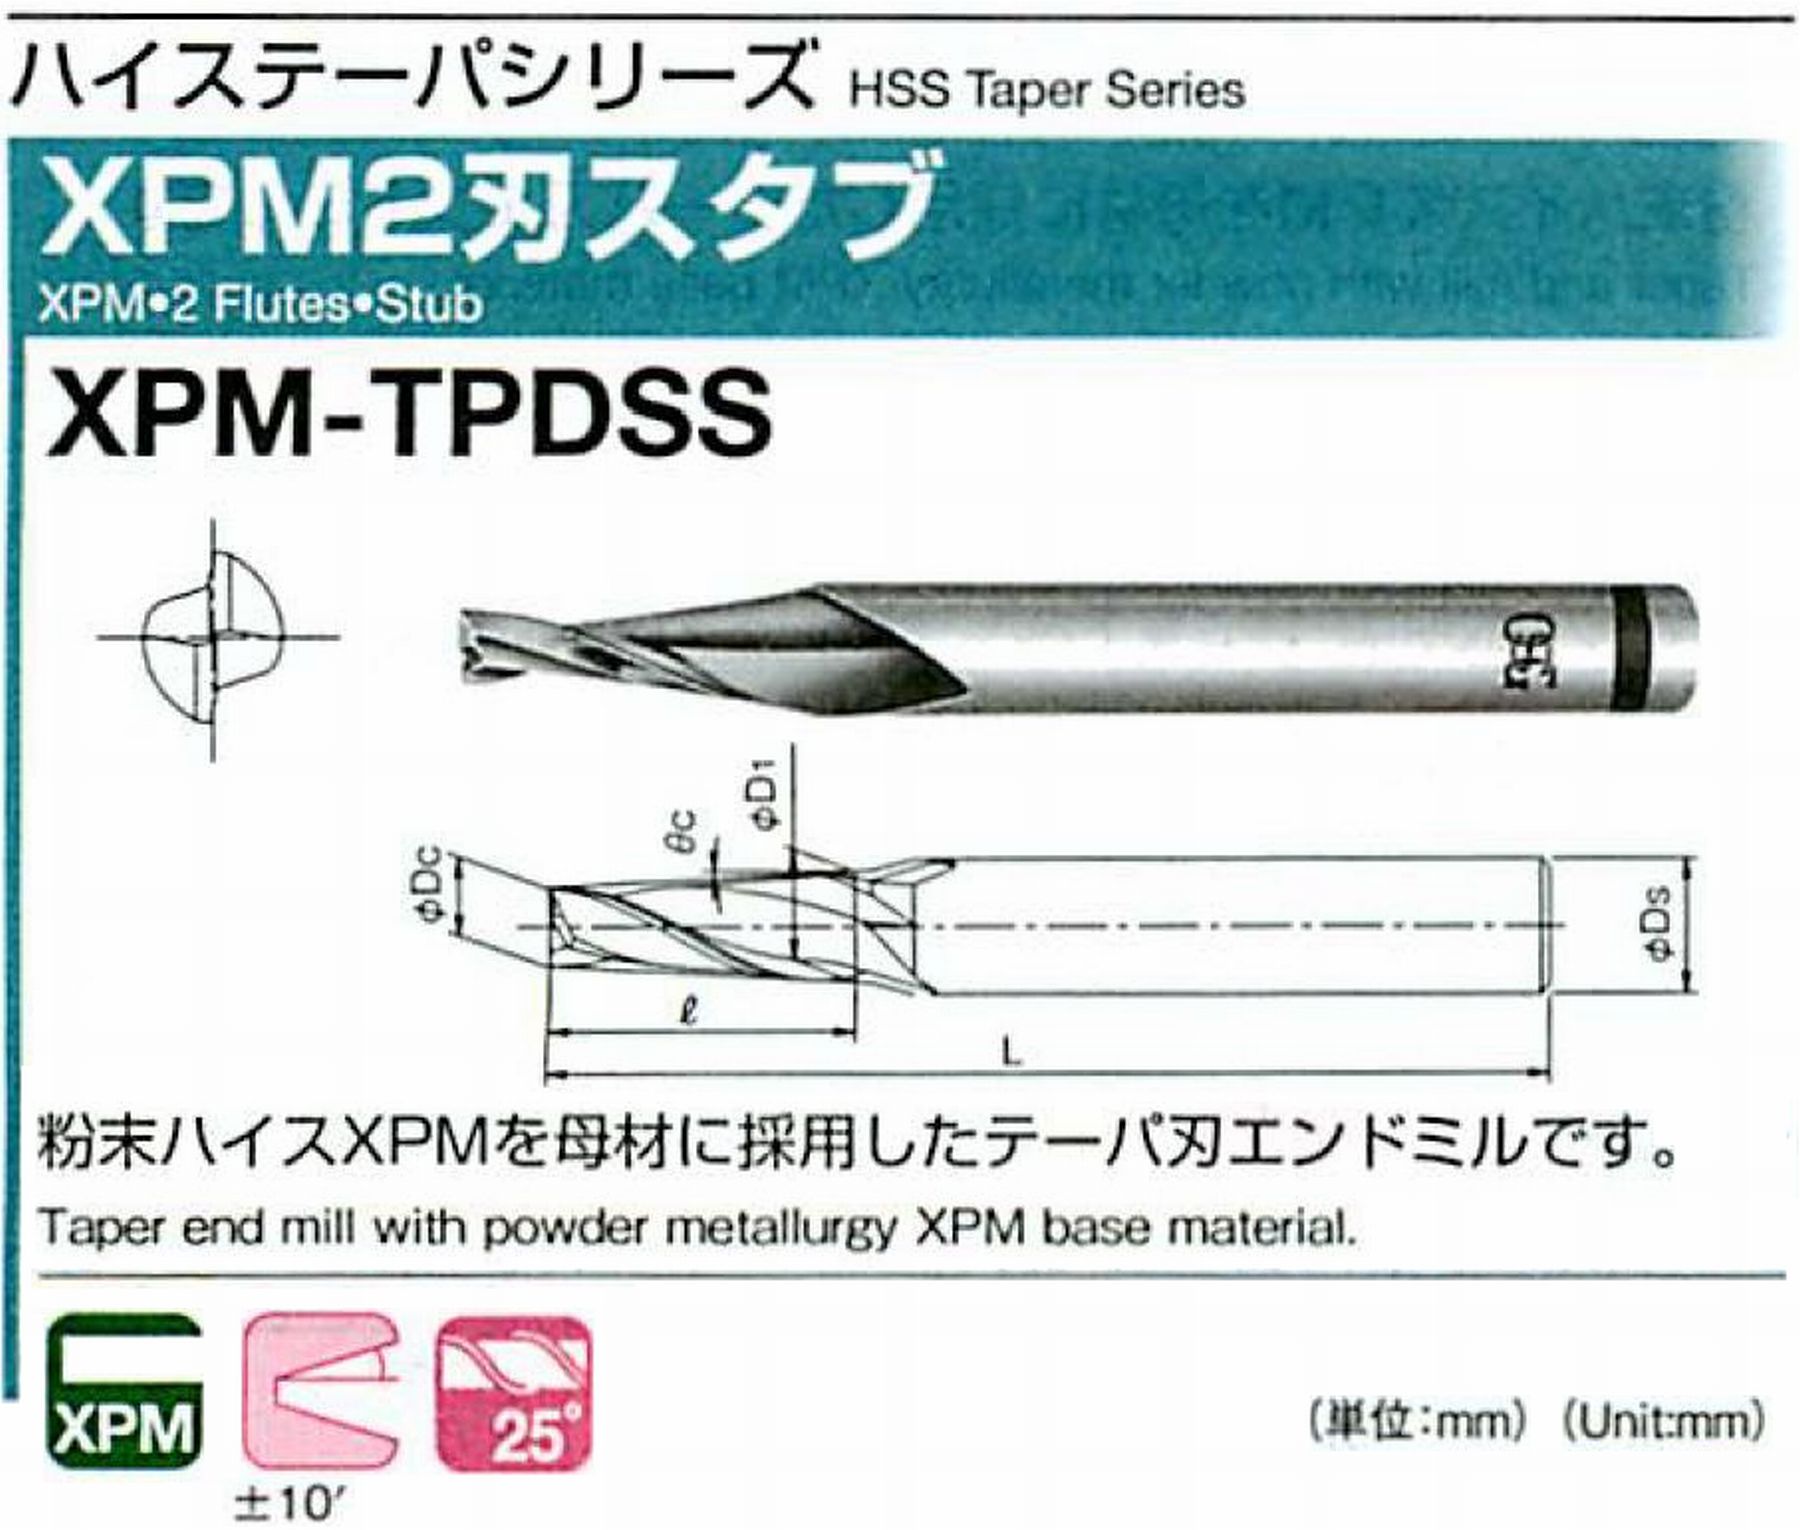 オーエスジー/OSG XPM2刃スタブ XPM-TPDSS 外径×刃部テーパ半角1.5×2.5° 全長49 刃長5 シャンク径6mm 大端径1.94